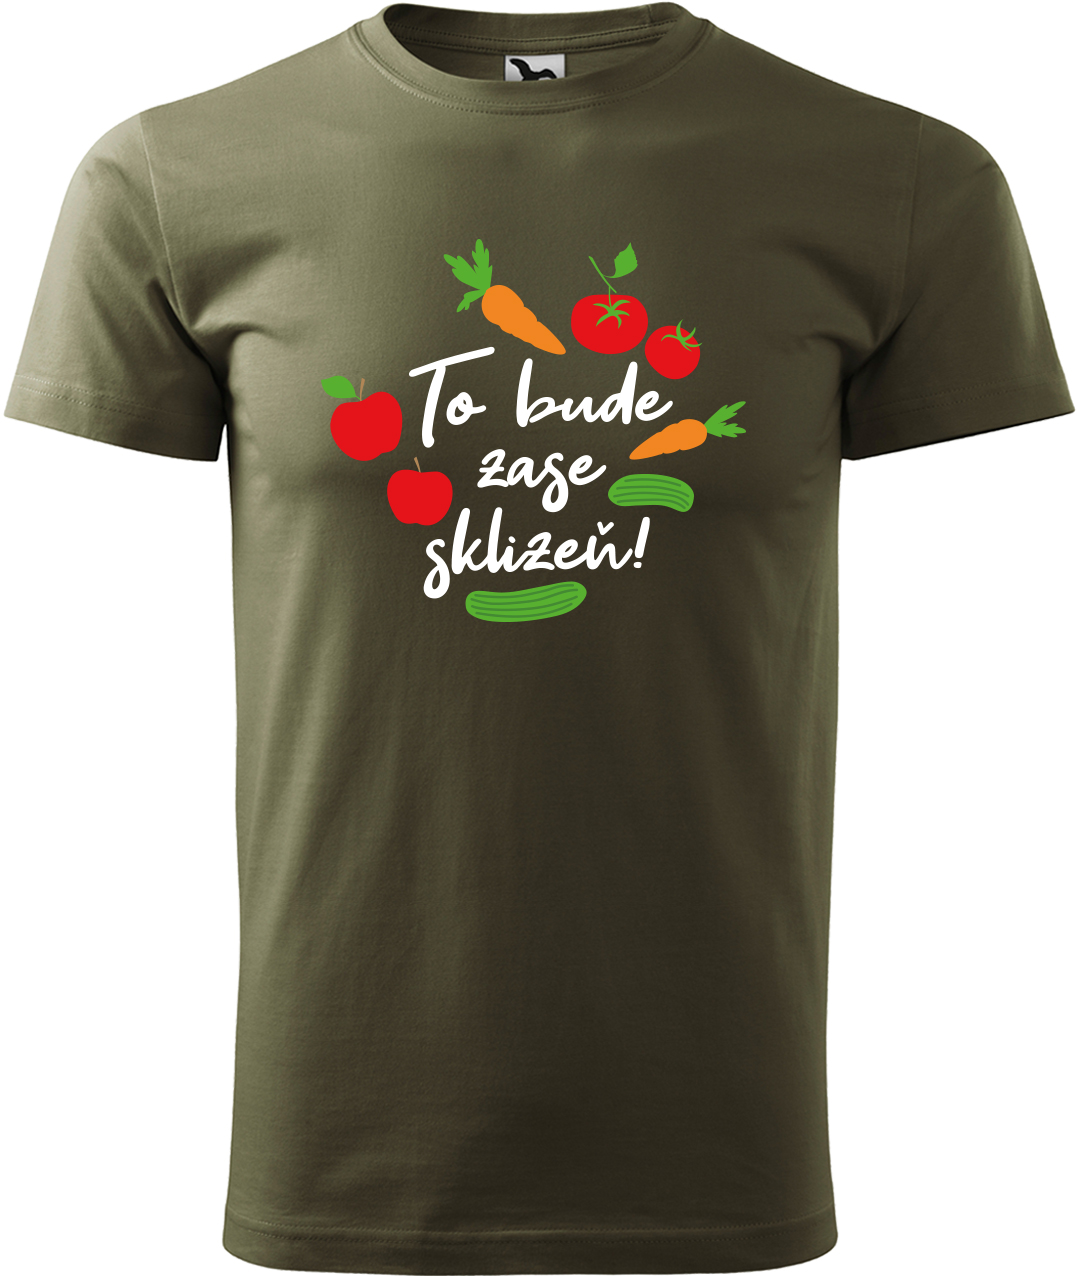 Tričko pro zahradníka - To bude zase sklizeň! Velikost: XL, Barva: Military (69), Střih: pánský